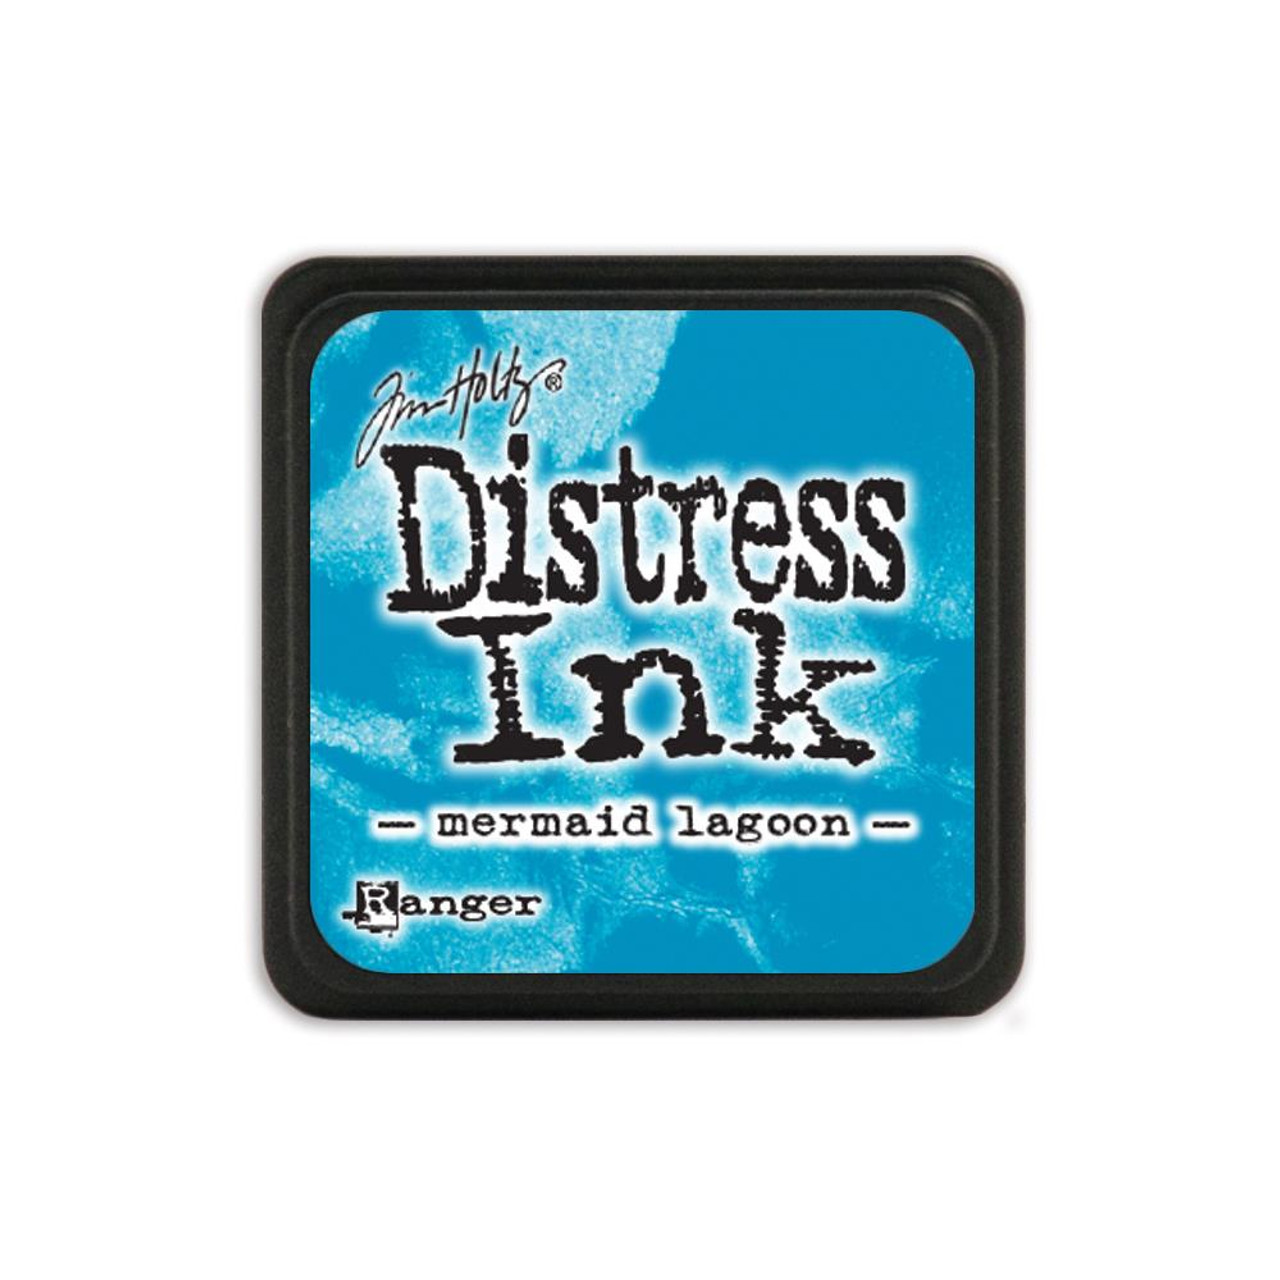 Tim Holtz Distress Ink Mini Pad - Mermaid Lagoon